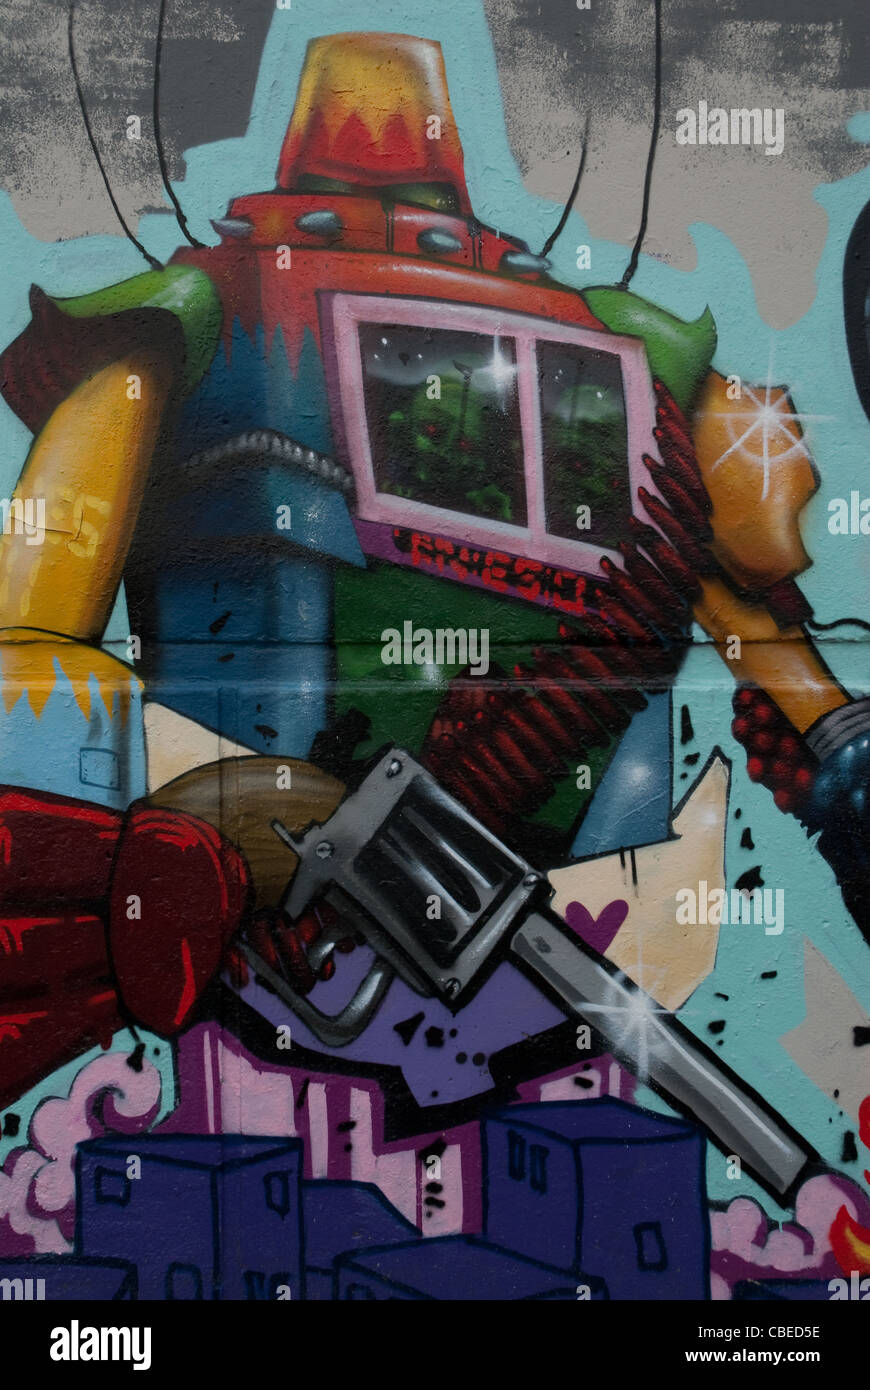 Uomo di robot, con la pistola davanti. I graffiti sulla parete in Olanda. Molto colorato Foto Stock